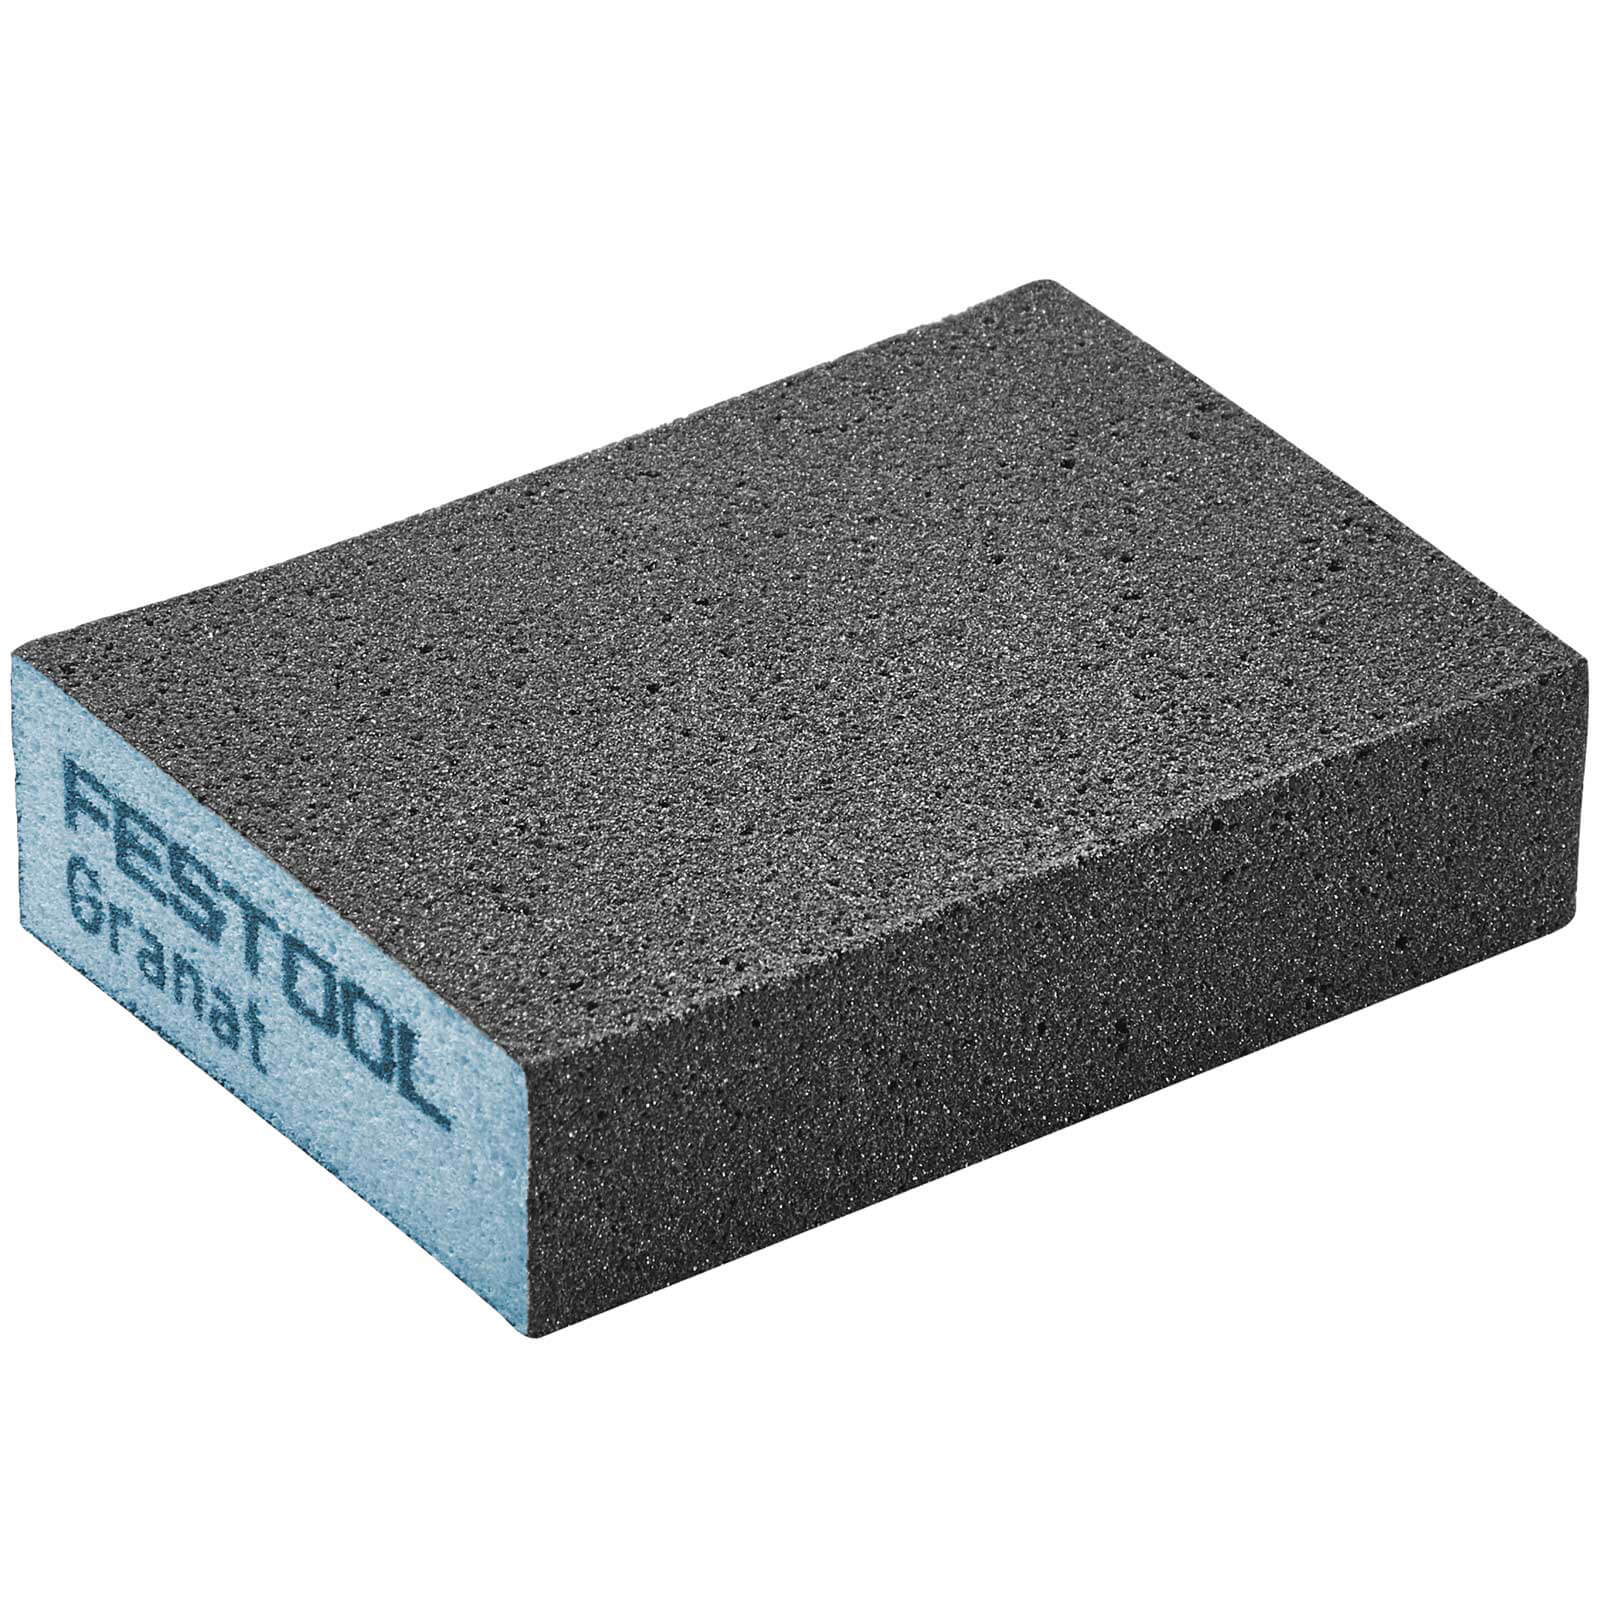 Image of Festool Abrasive Hand Sanding Sponge Block 36g Pack of 6